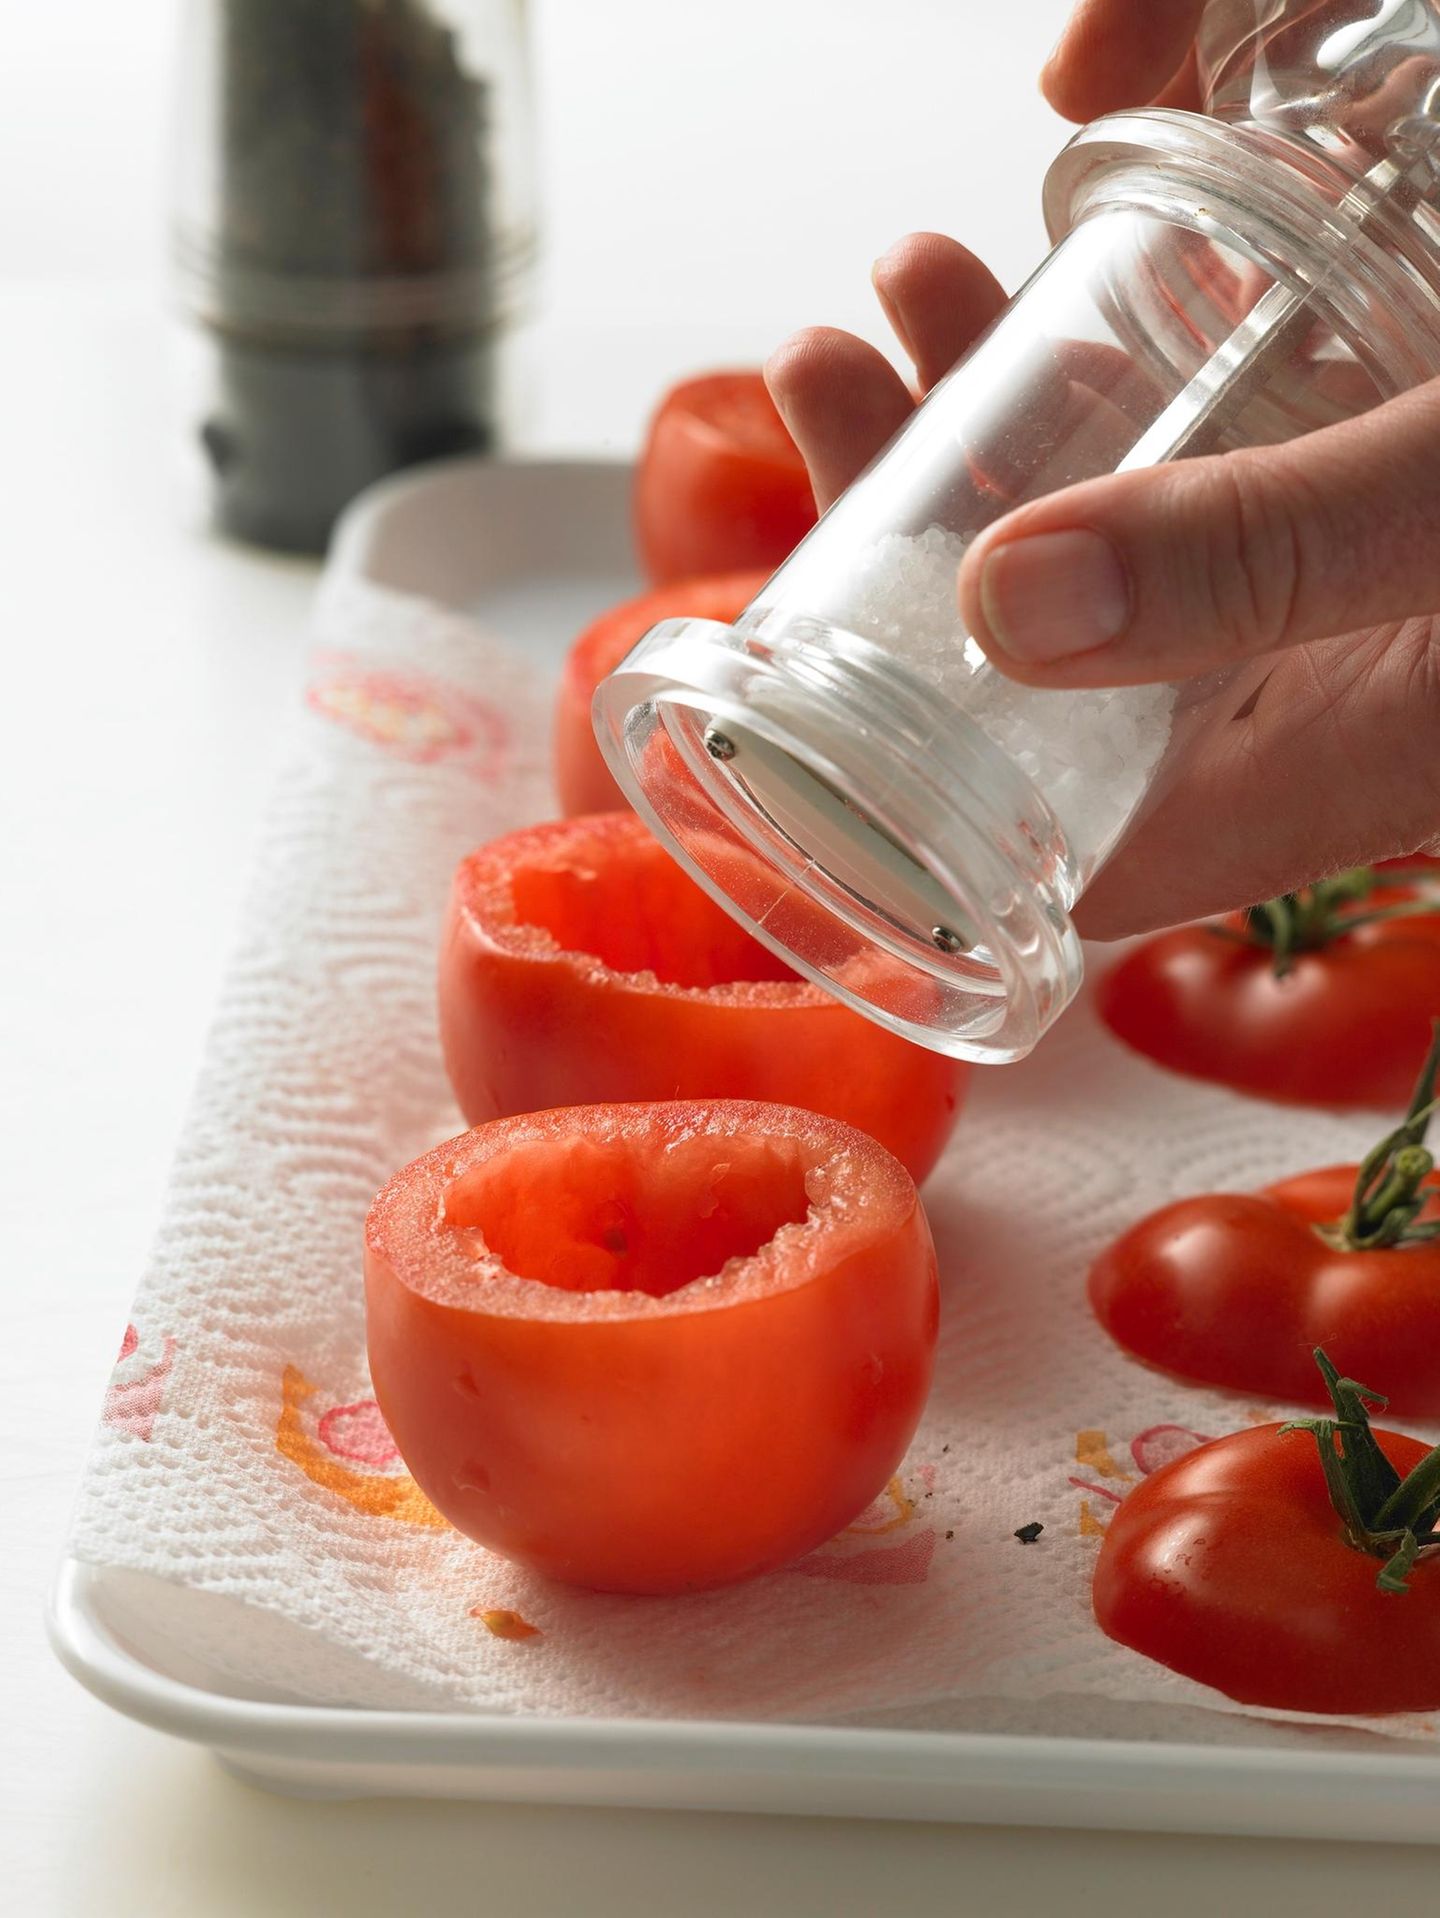 Ausgehöhlte Tomaten würzen